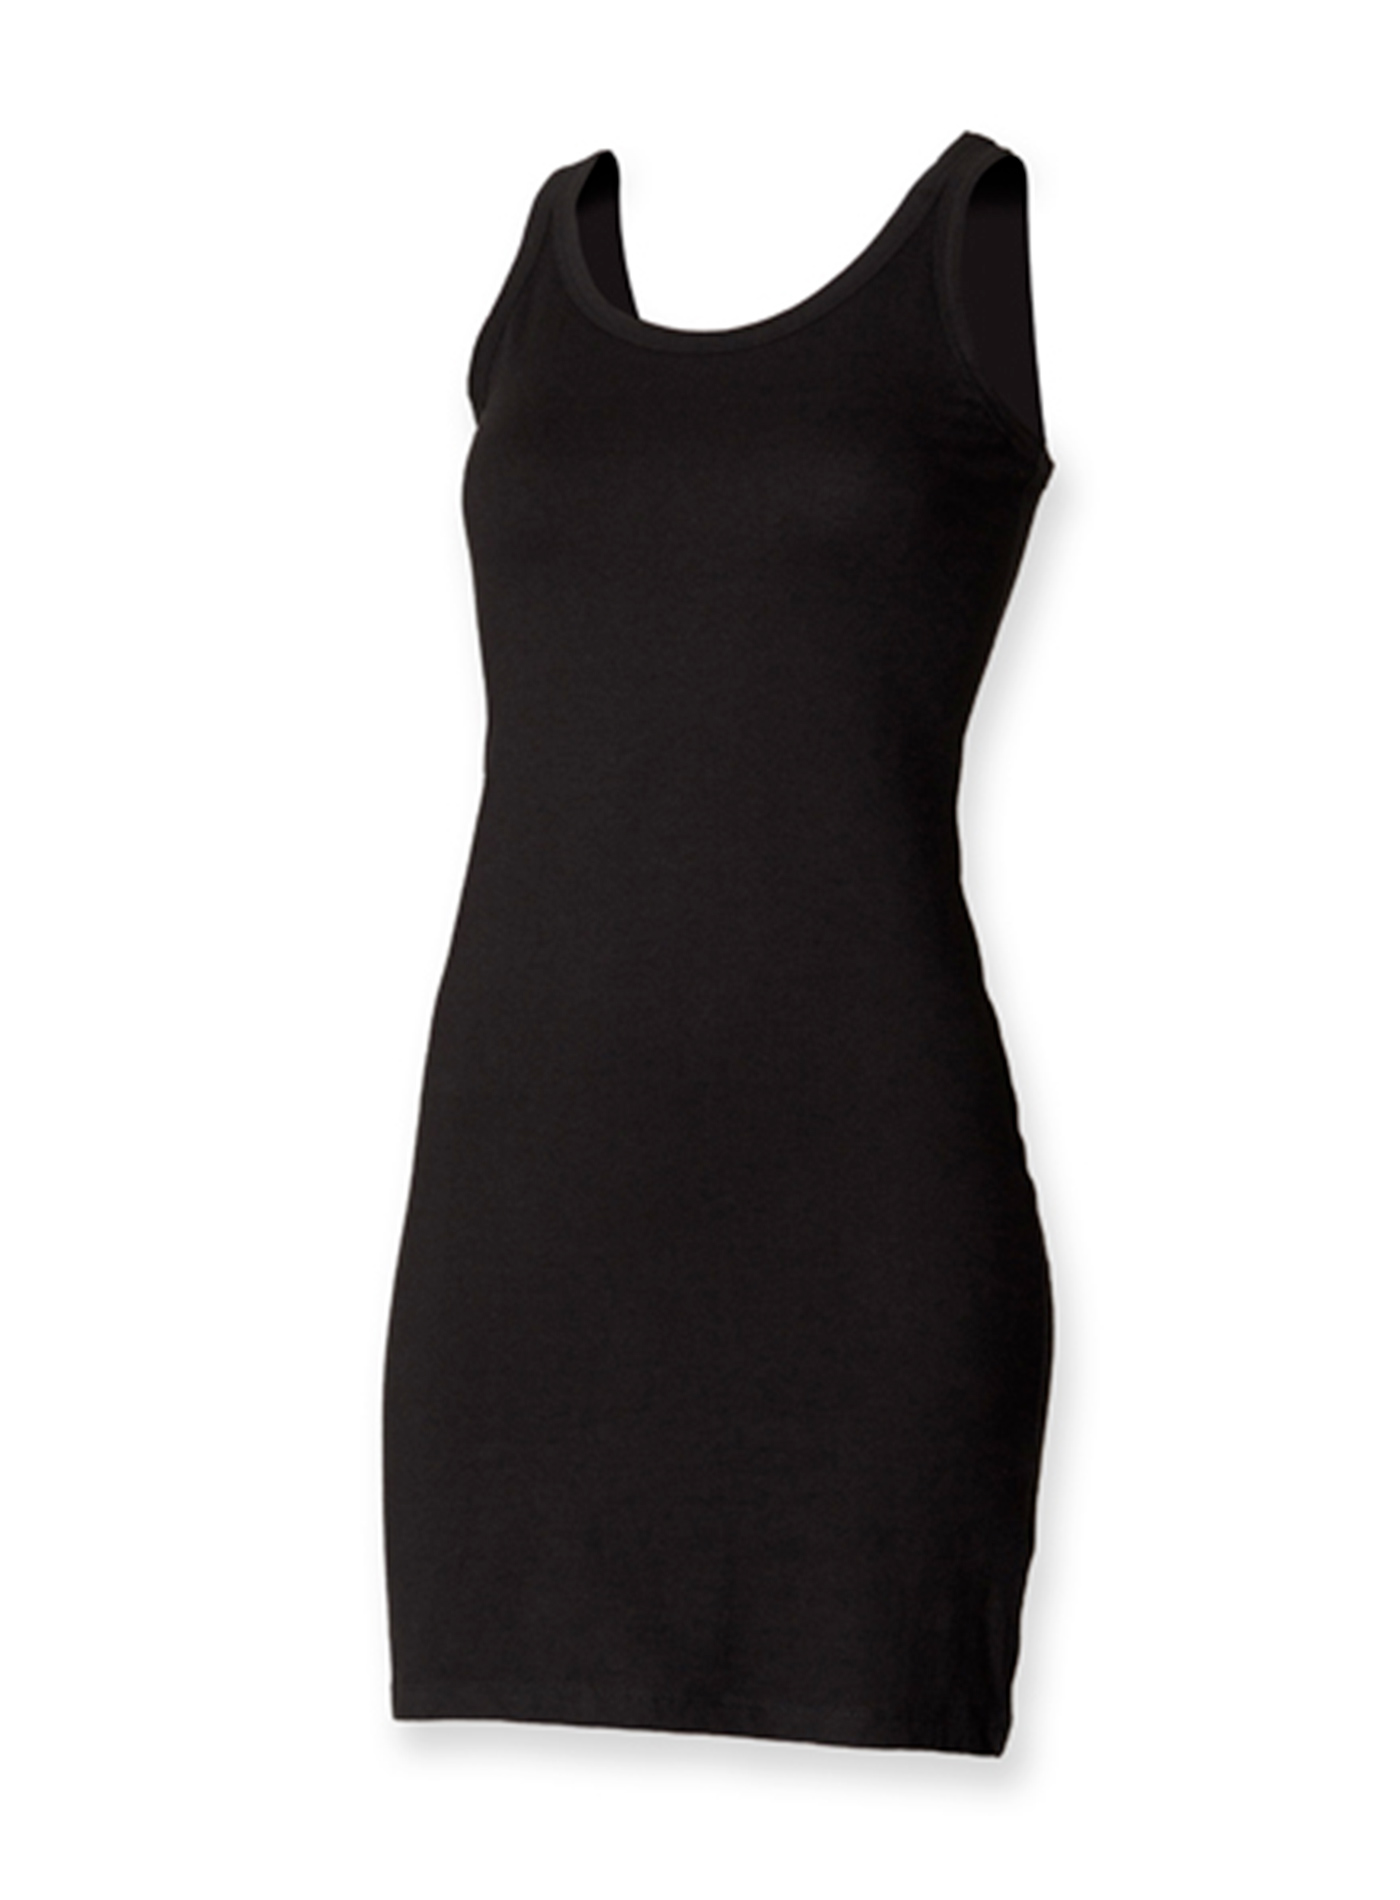 Dámské strečové šaty Skinnifit - černá XL